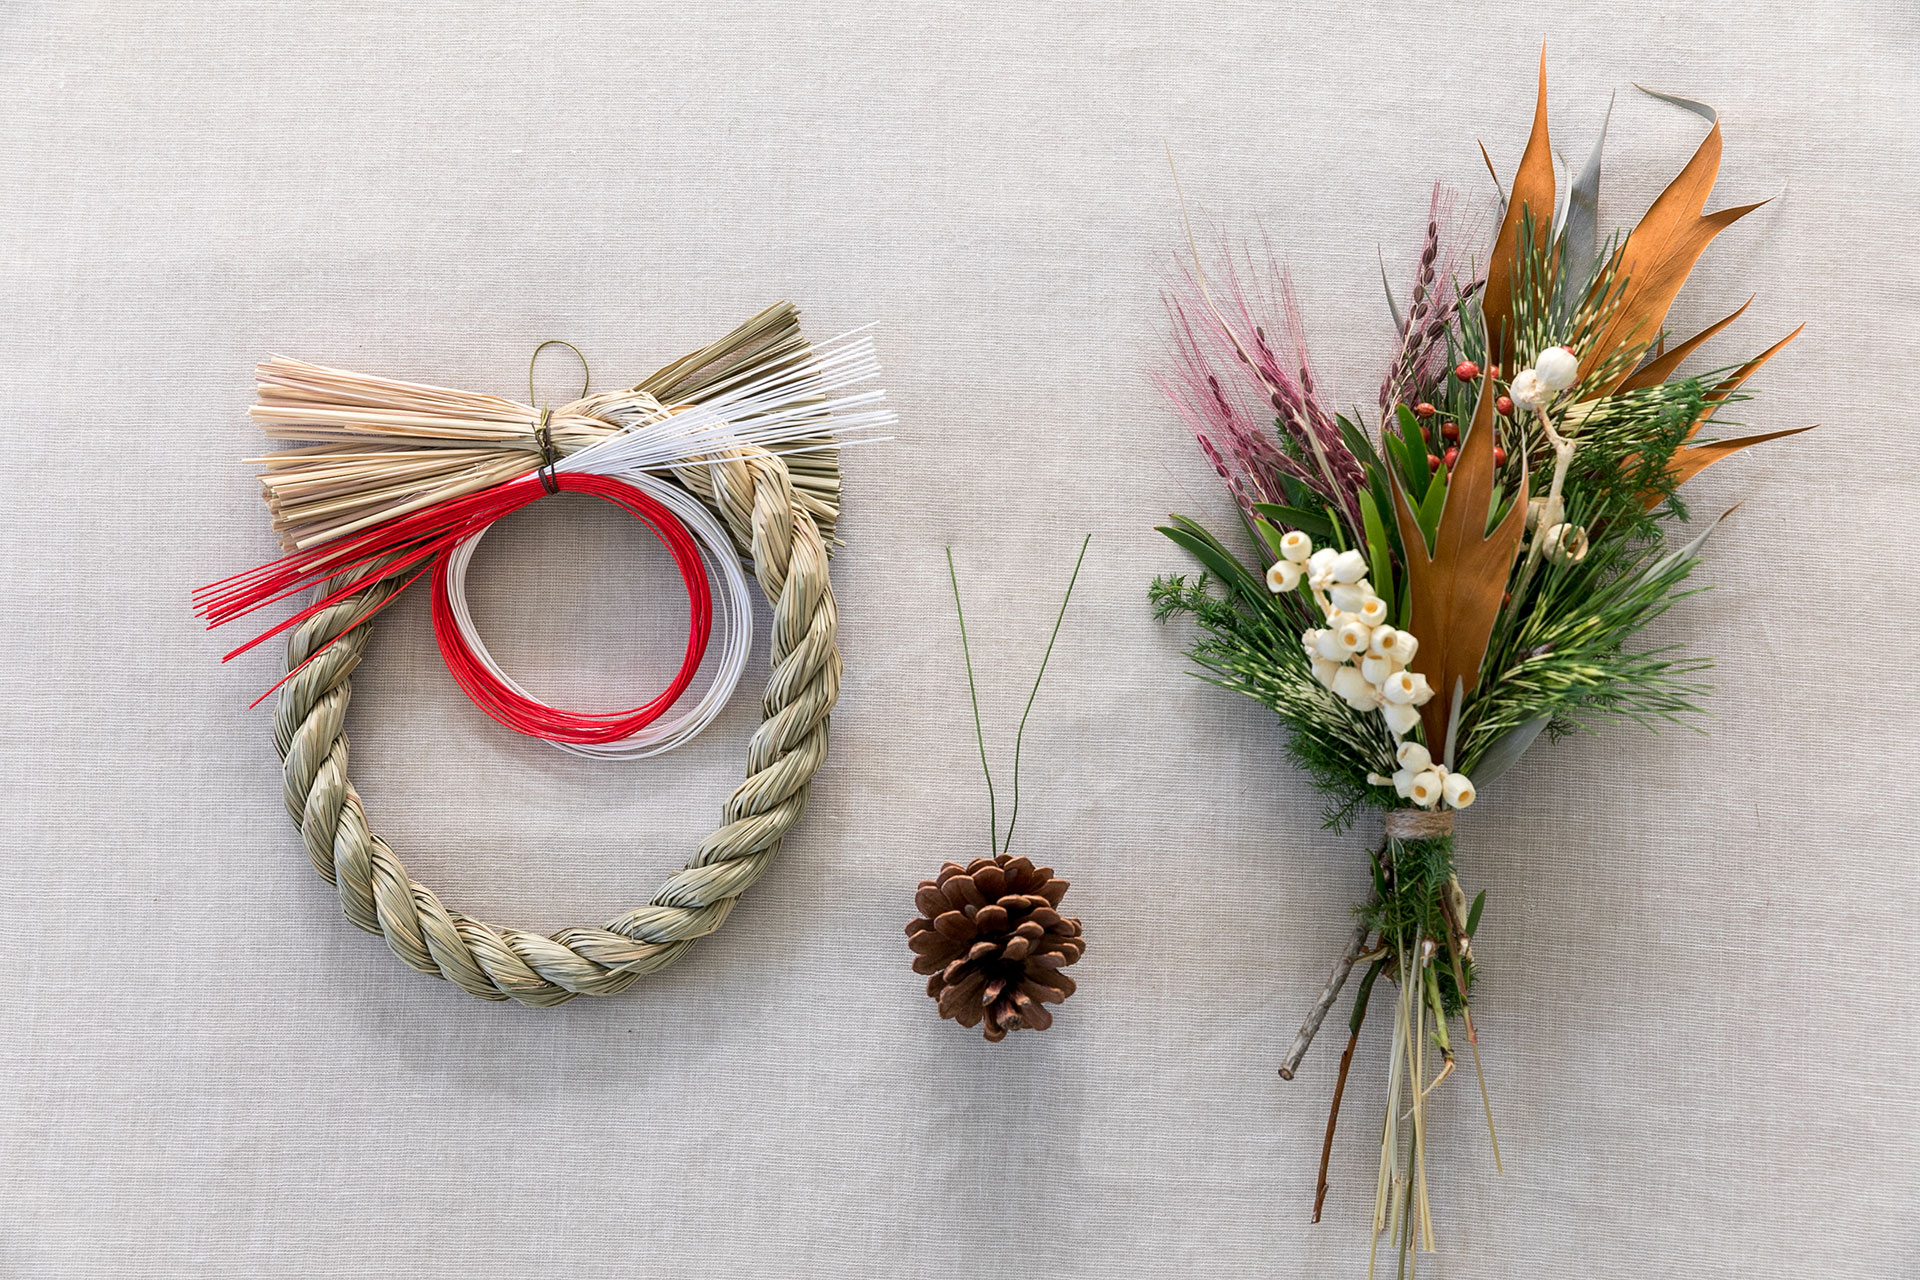 スワッグとしめ縄を別々に作る。２つを合わせればお正月のしめ飾りに。しめ縄を外せばスワッグだけ飾ることができる。